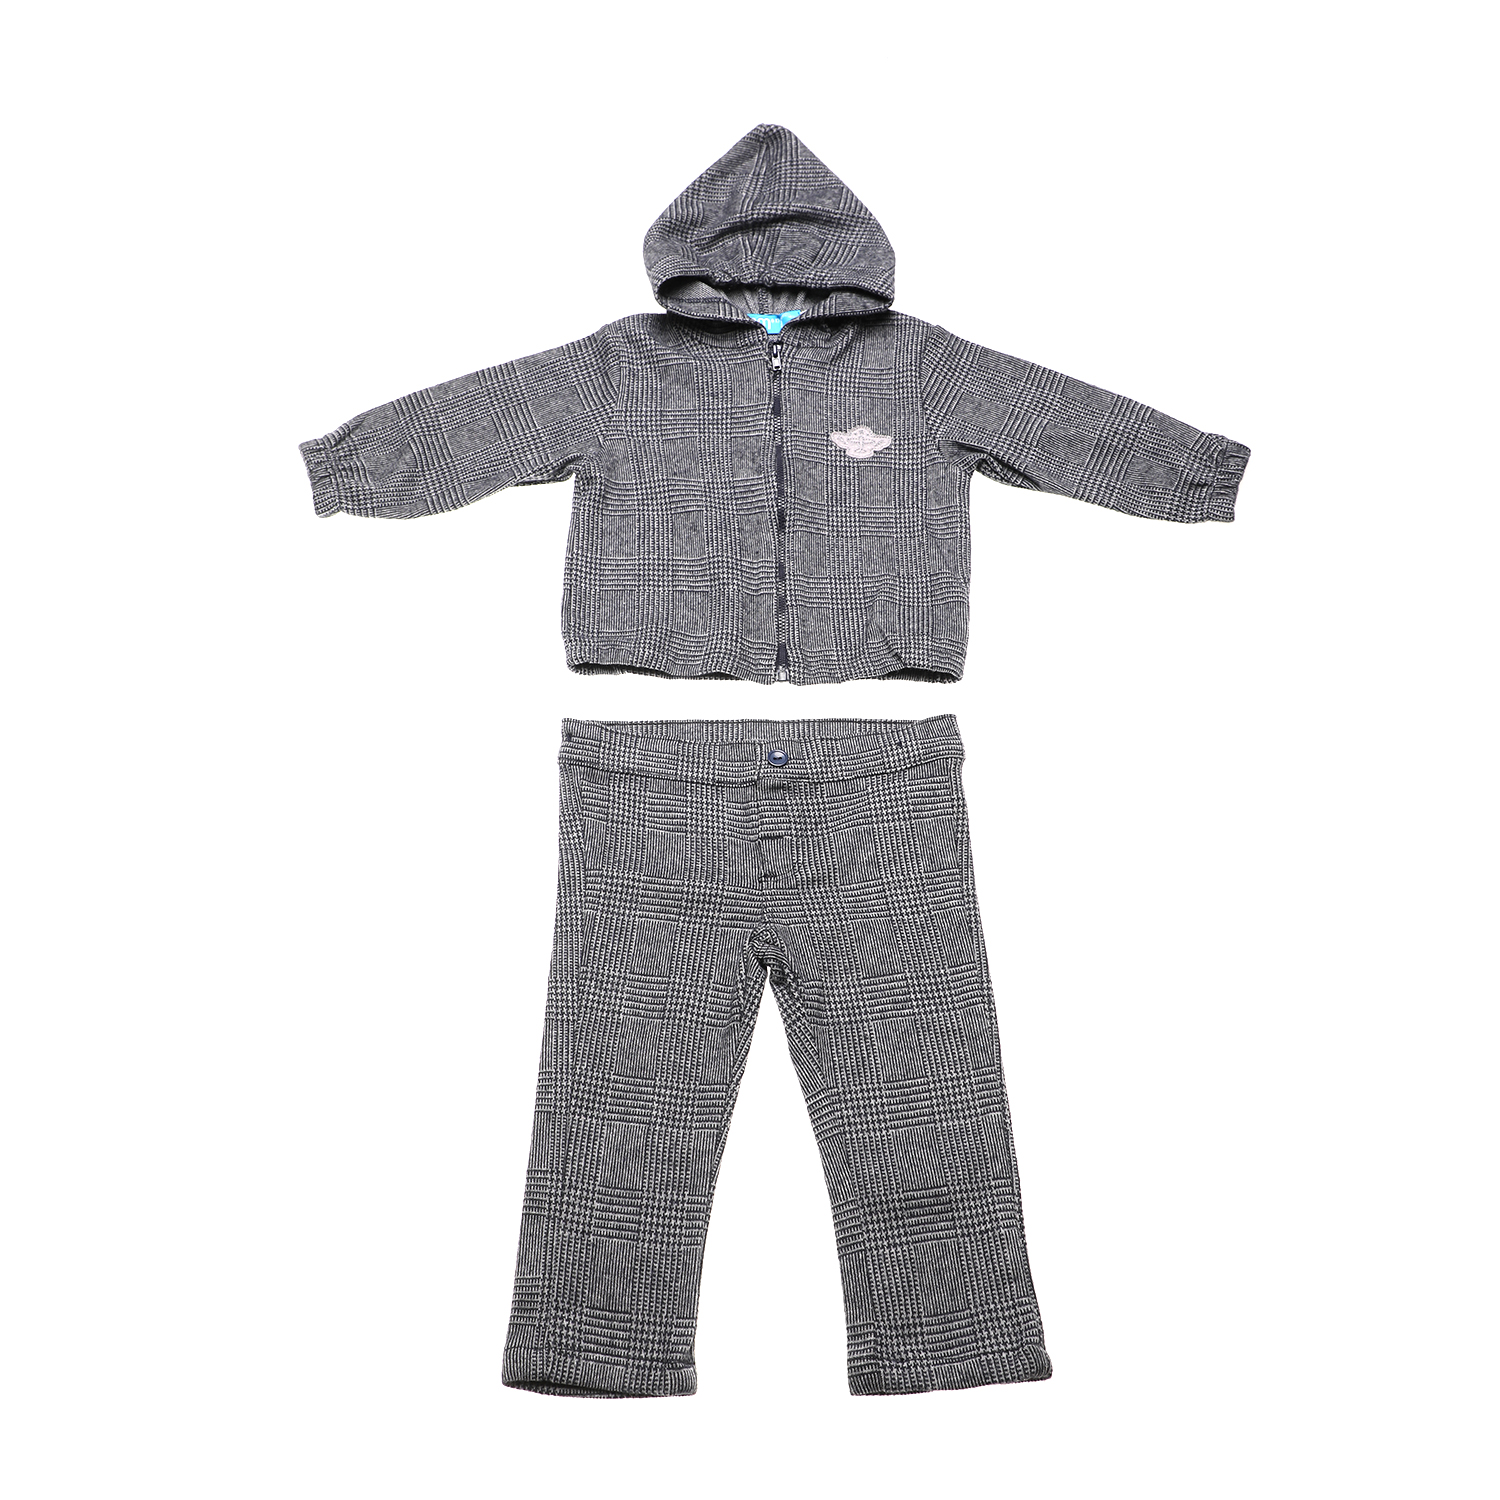 Παιδικά/Baby/Ρούχα/Σετ SAM 0-13 - Παιδικό σετ από ζακέτα, μπλούζα και παντελόνι SAM 0-13 εκρού γκρι